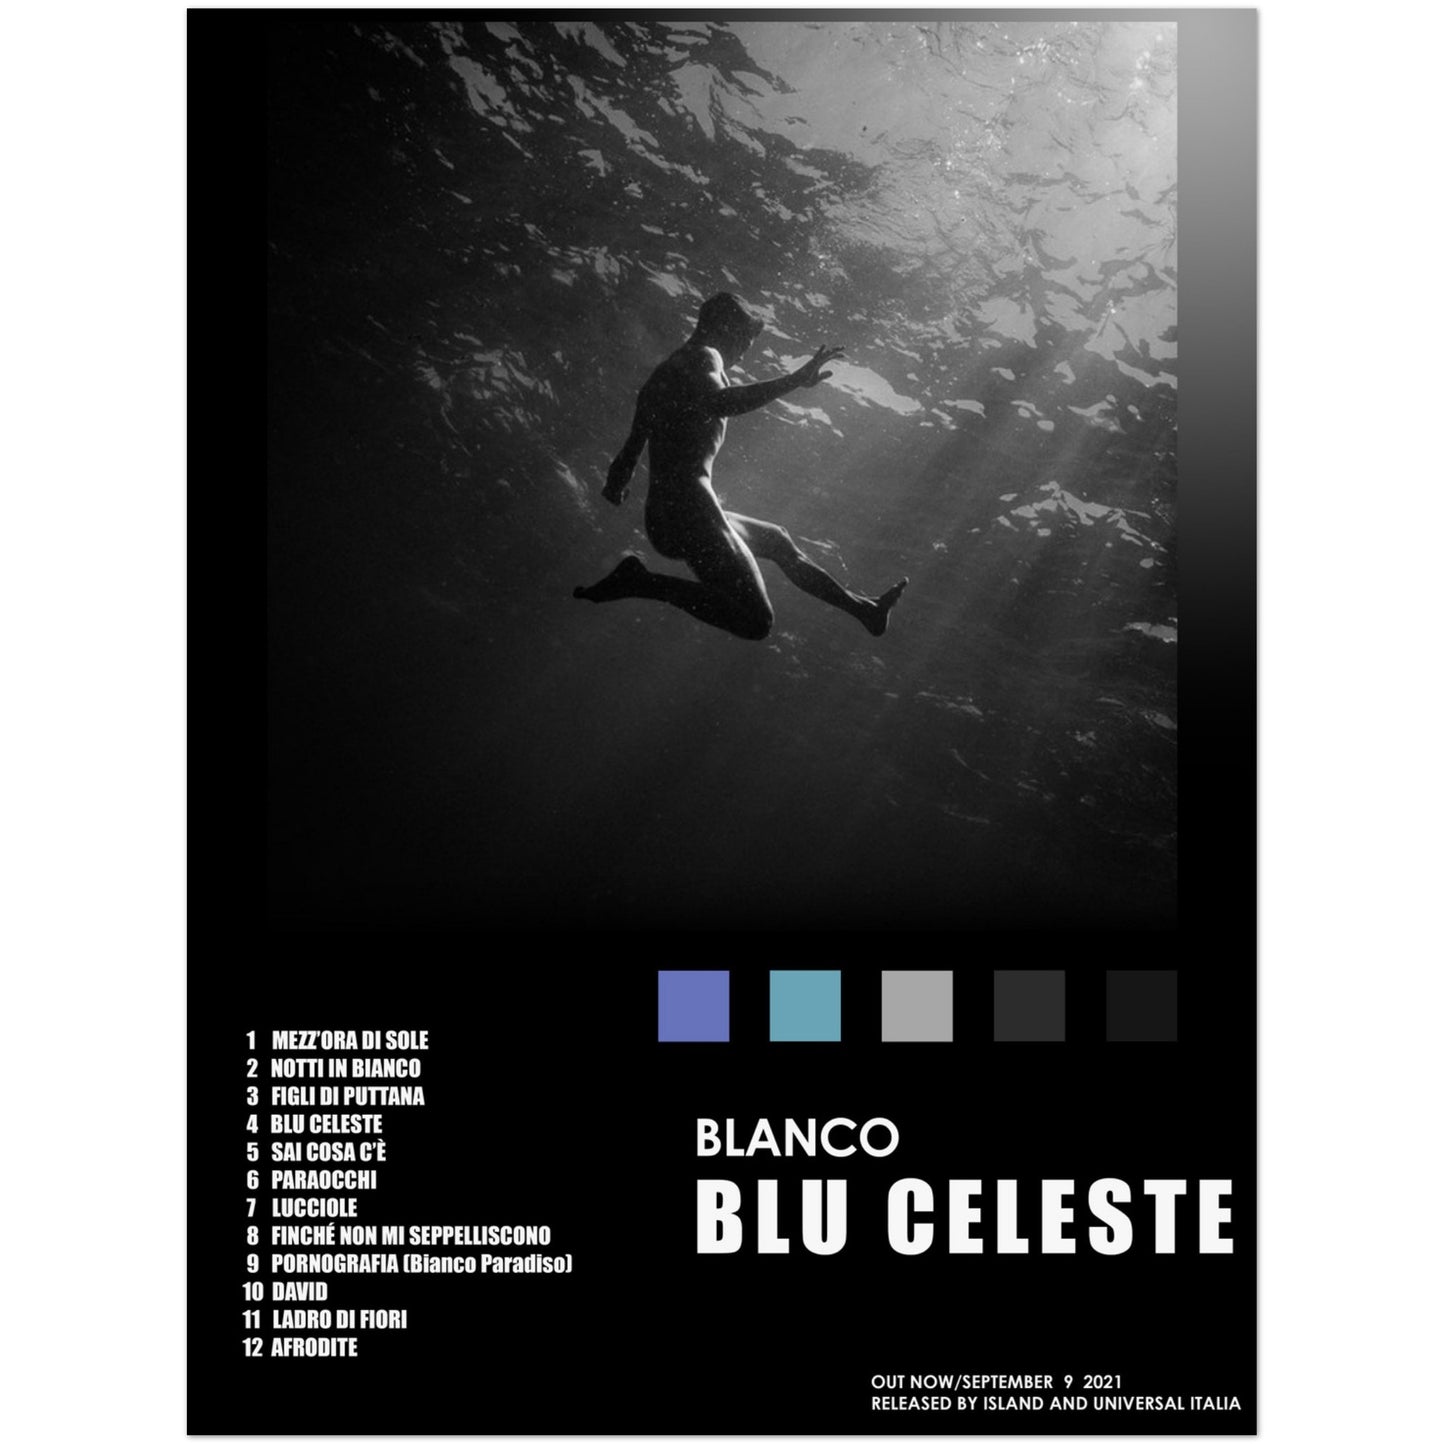 Poster album "Blu celeste" (Blanco)